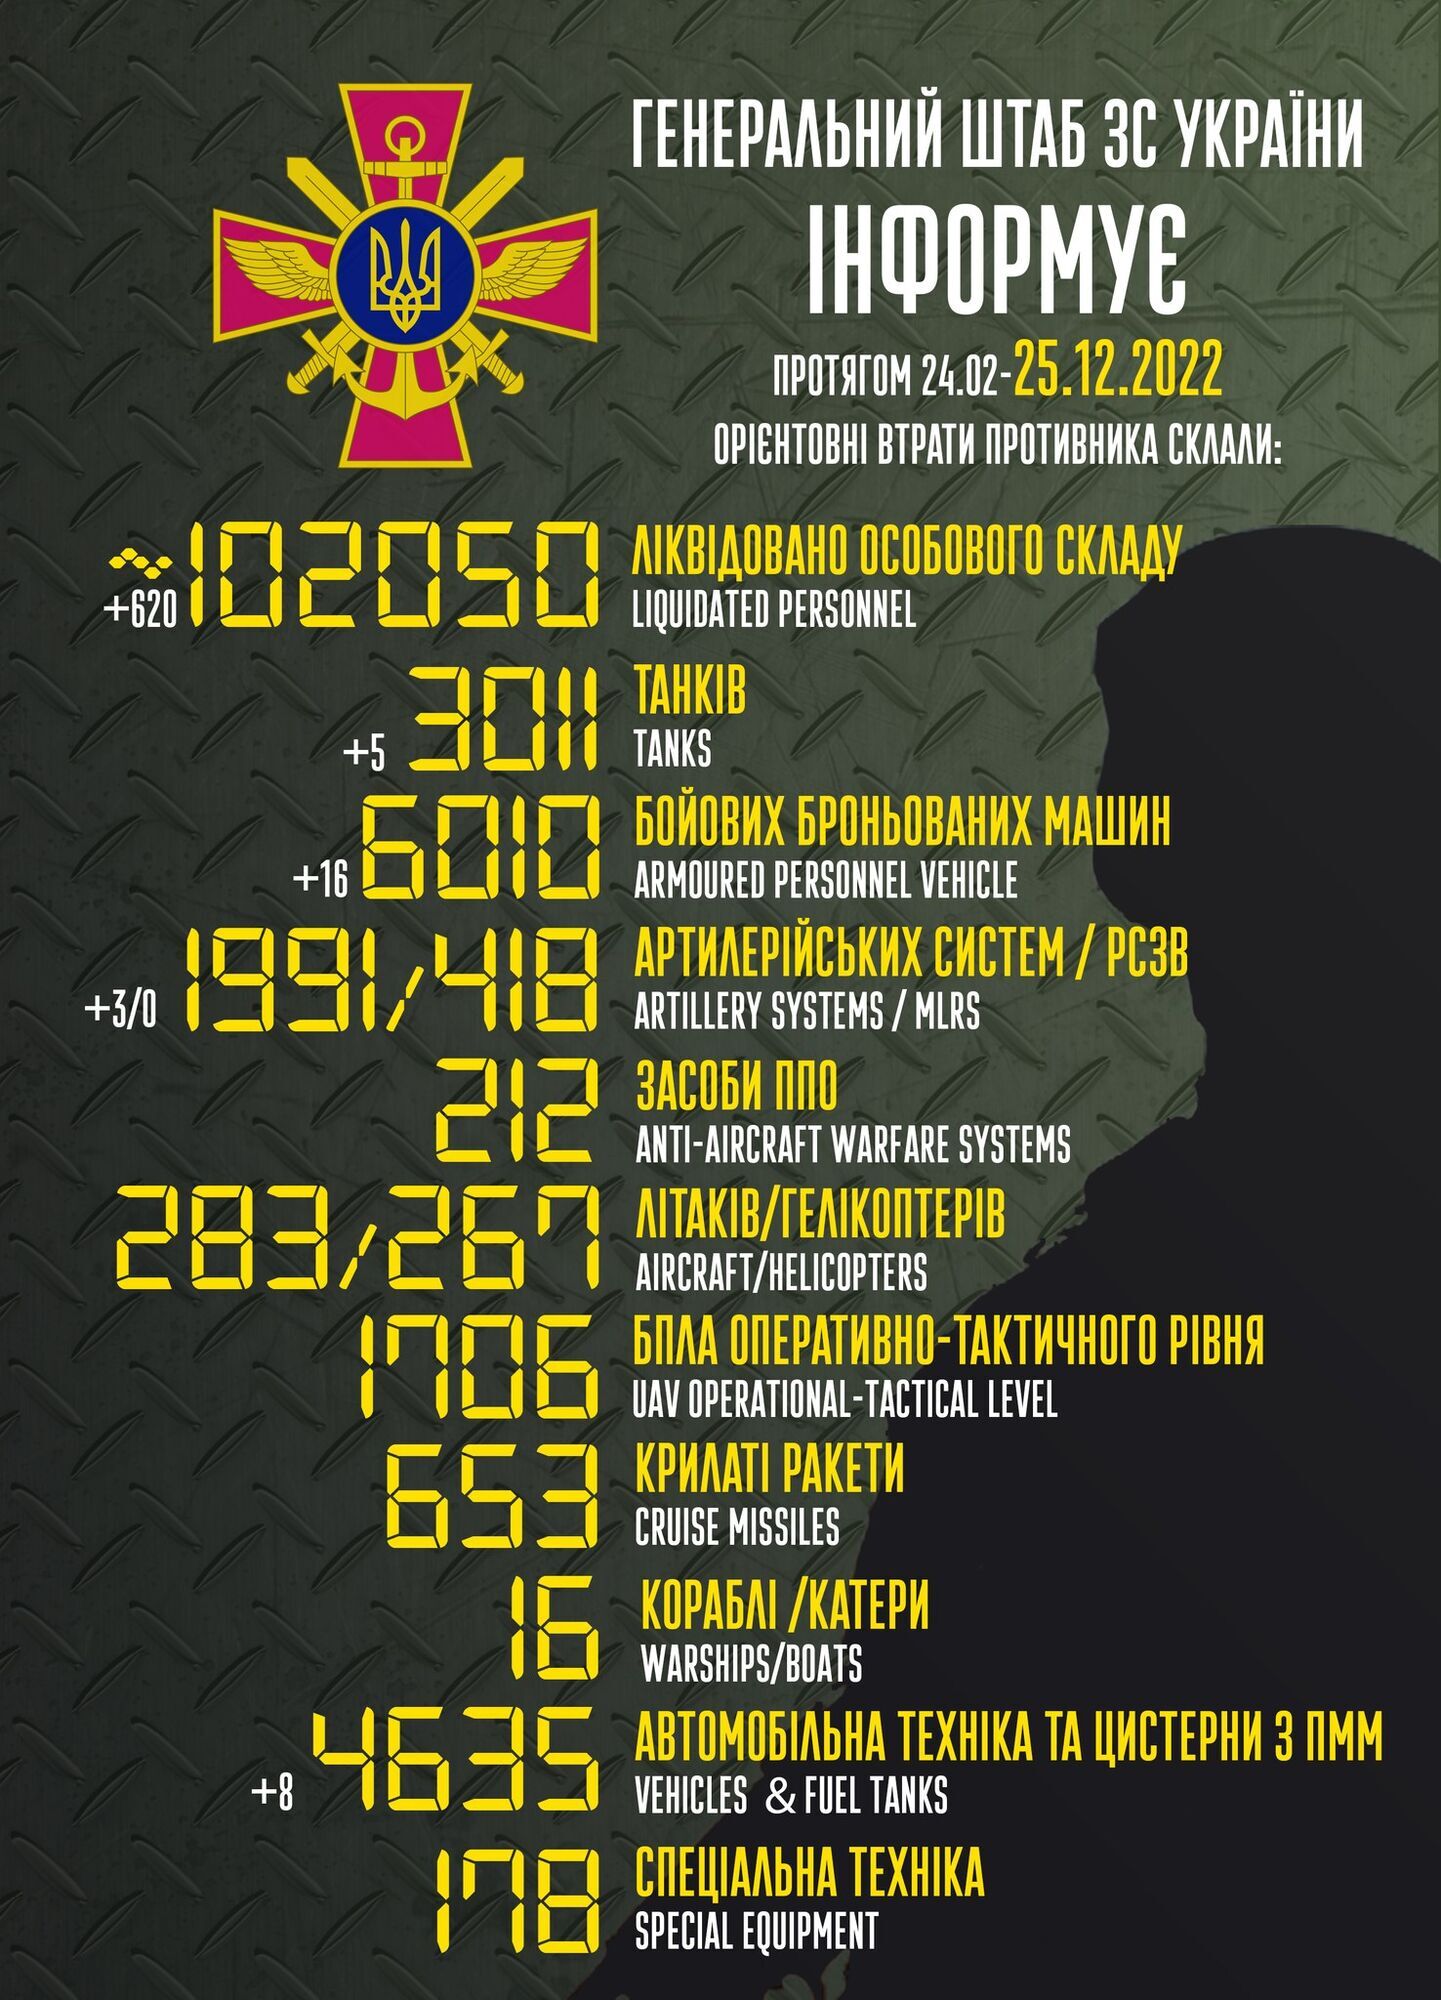 Загальні втрати ворога від 24 лютого по 25 грудня - втрти росіян у війні - війна в Україні